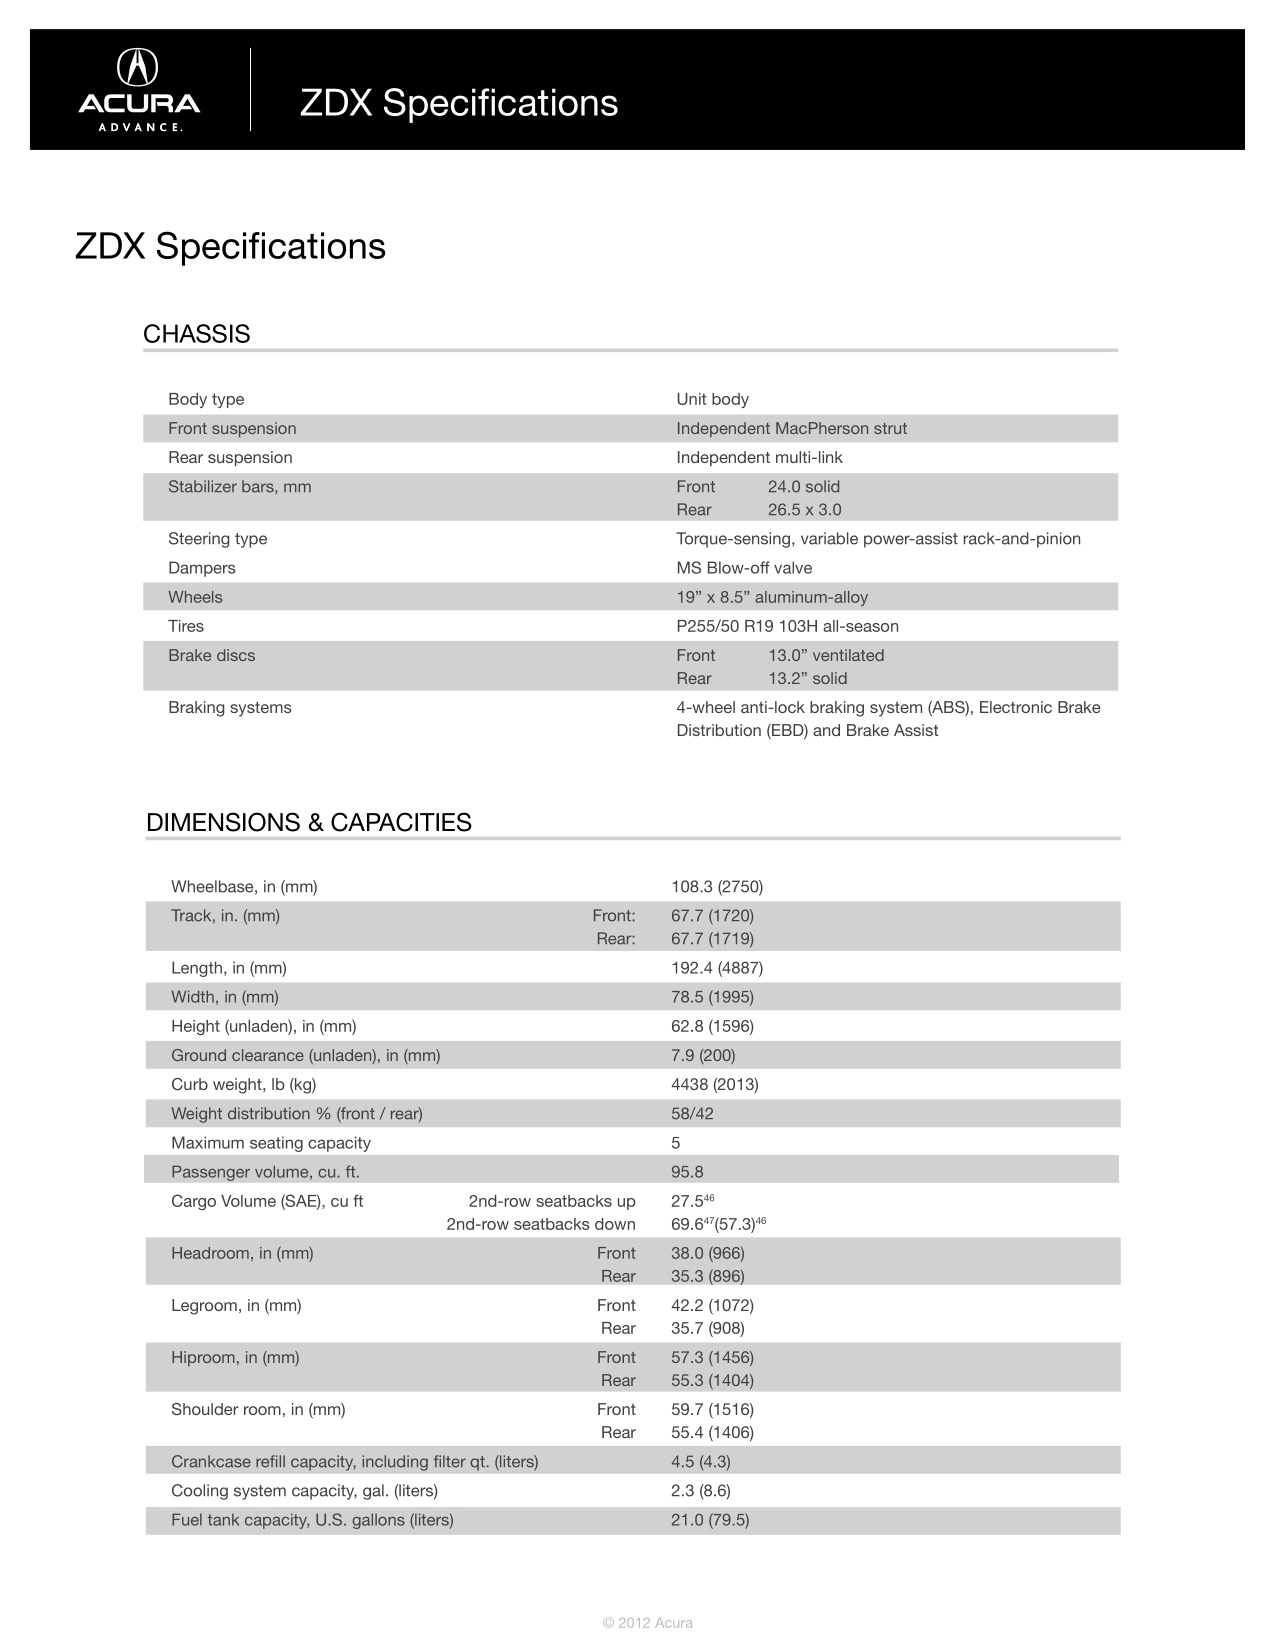 2013 Acura ZDX Brochure Page 31